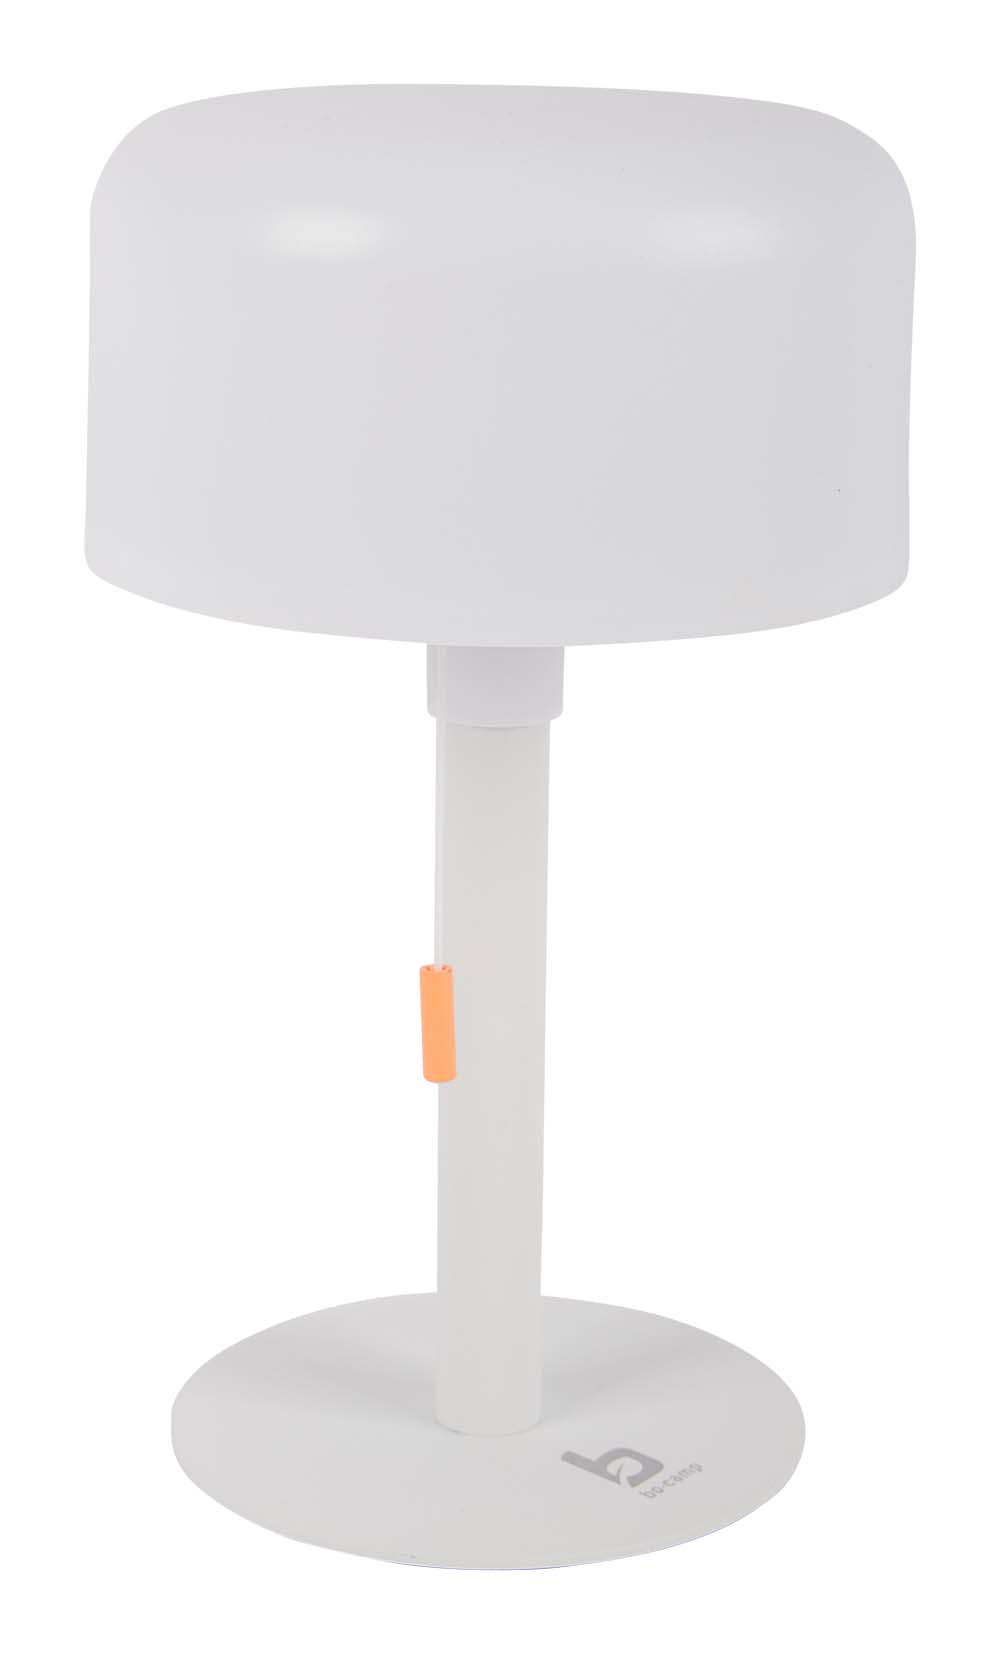 5818619 Eine moderne Tischlampe aus der Kollektion Pastel. Gibt ein angenehmes Licht durch die LEDs mit einer warmen Lichtfarbe. Die Lampe kann in drei Lichtmodi verwendet werden: 25%, 50% und 100%. Der eingebaute Lithium-Ionen-Akku kann mit einem mitgelieferten USB-Kabel aufgeladen werden. Ideal für einen Tisch oder Schrank.